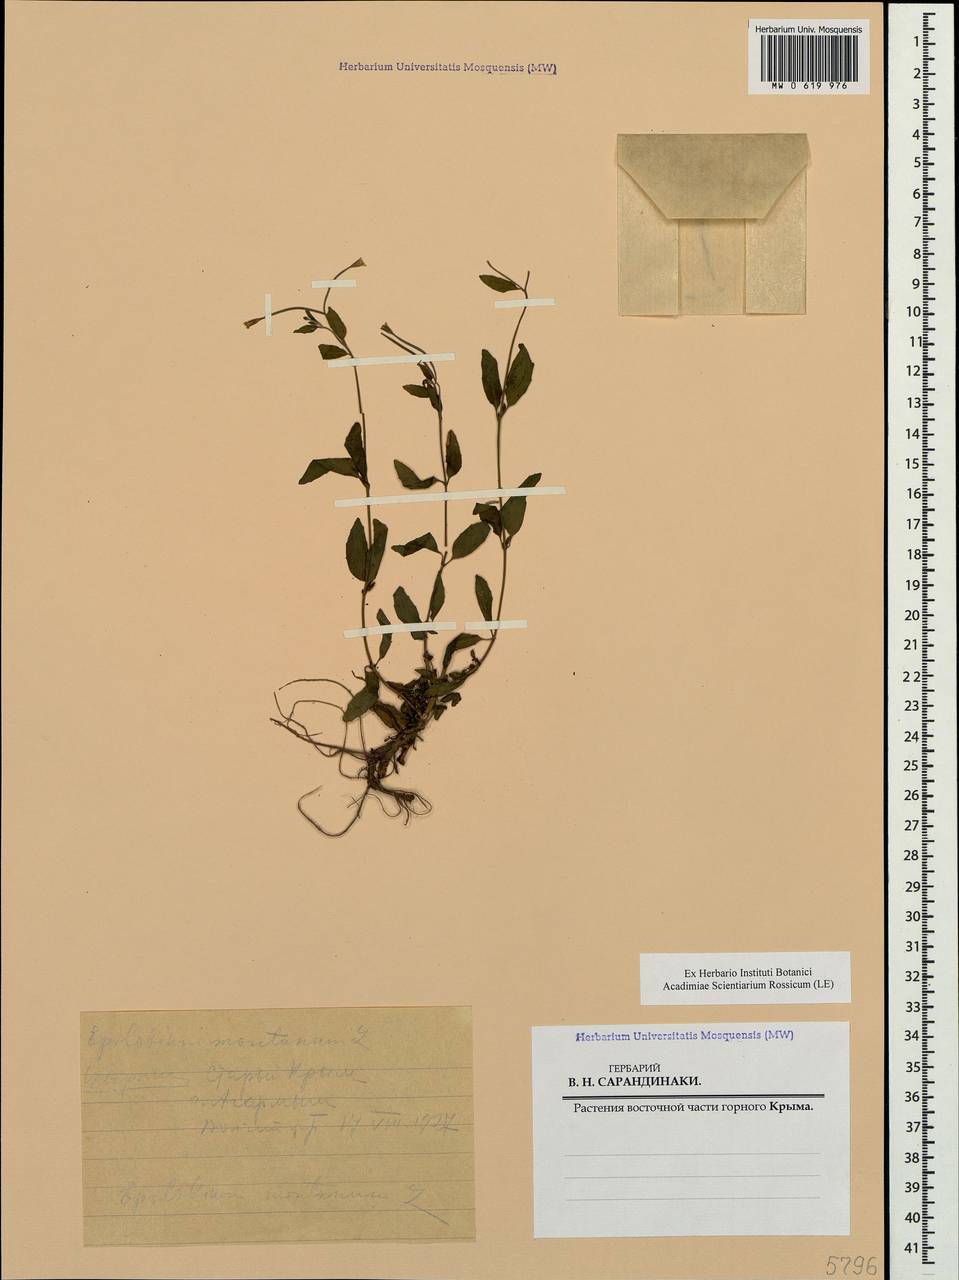 Epilobium montanum L., Crimea (KRYM) (Russia)